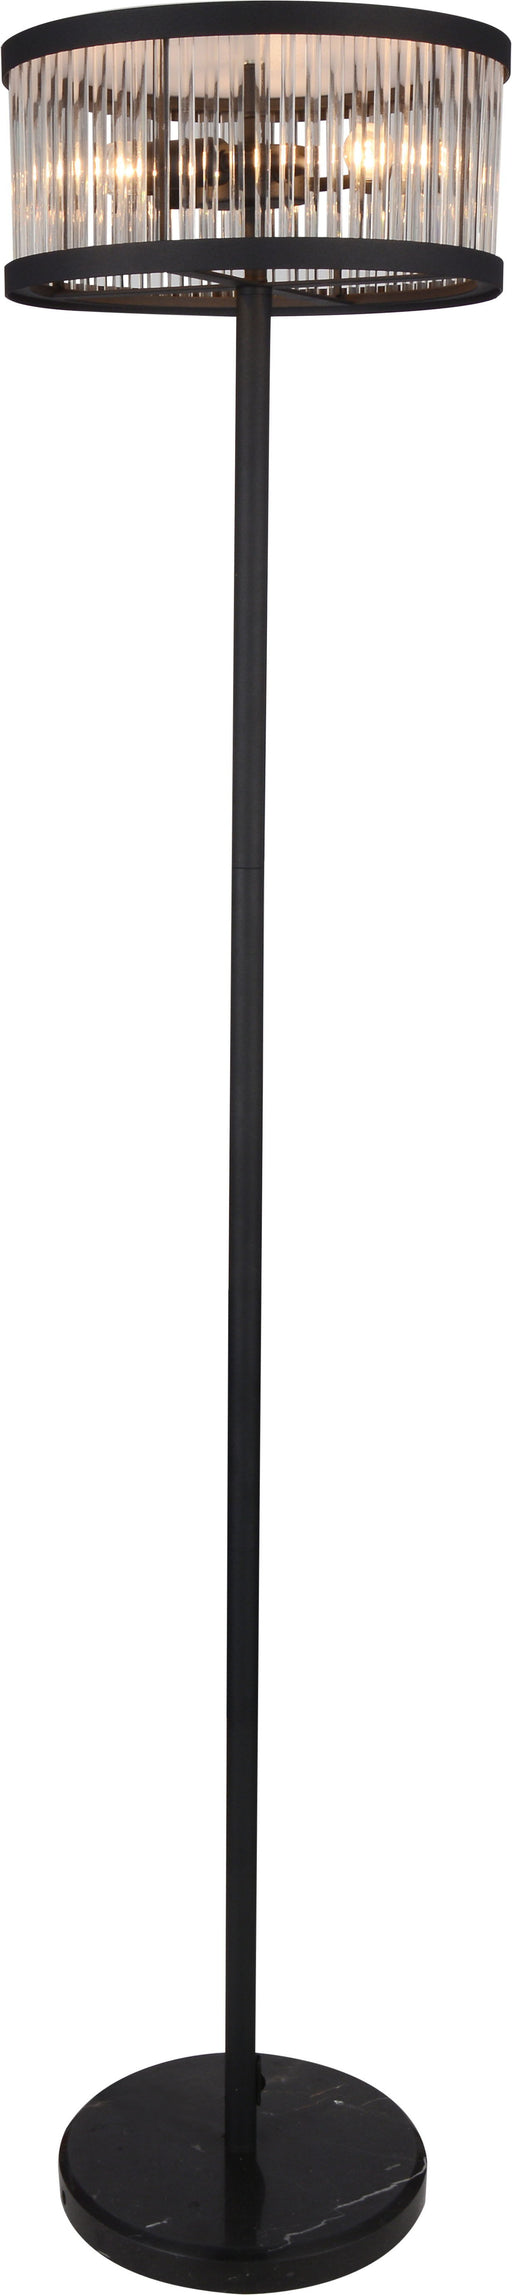 Aven - Floor Lamp - Black Satin Unique Piece Furniture